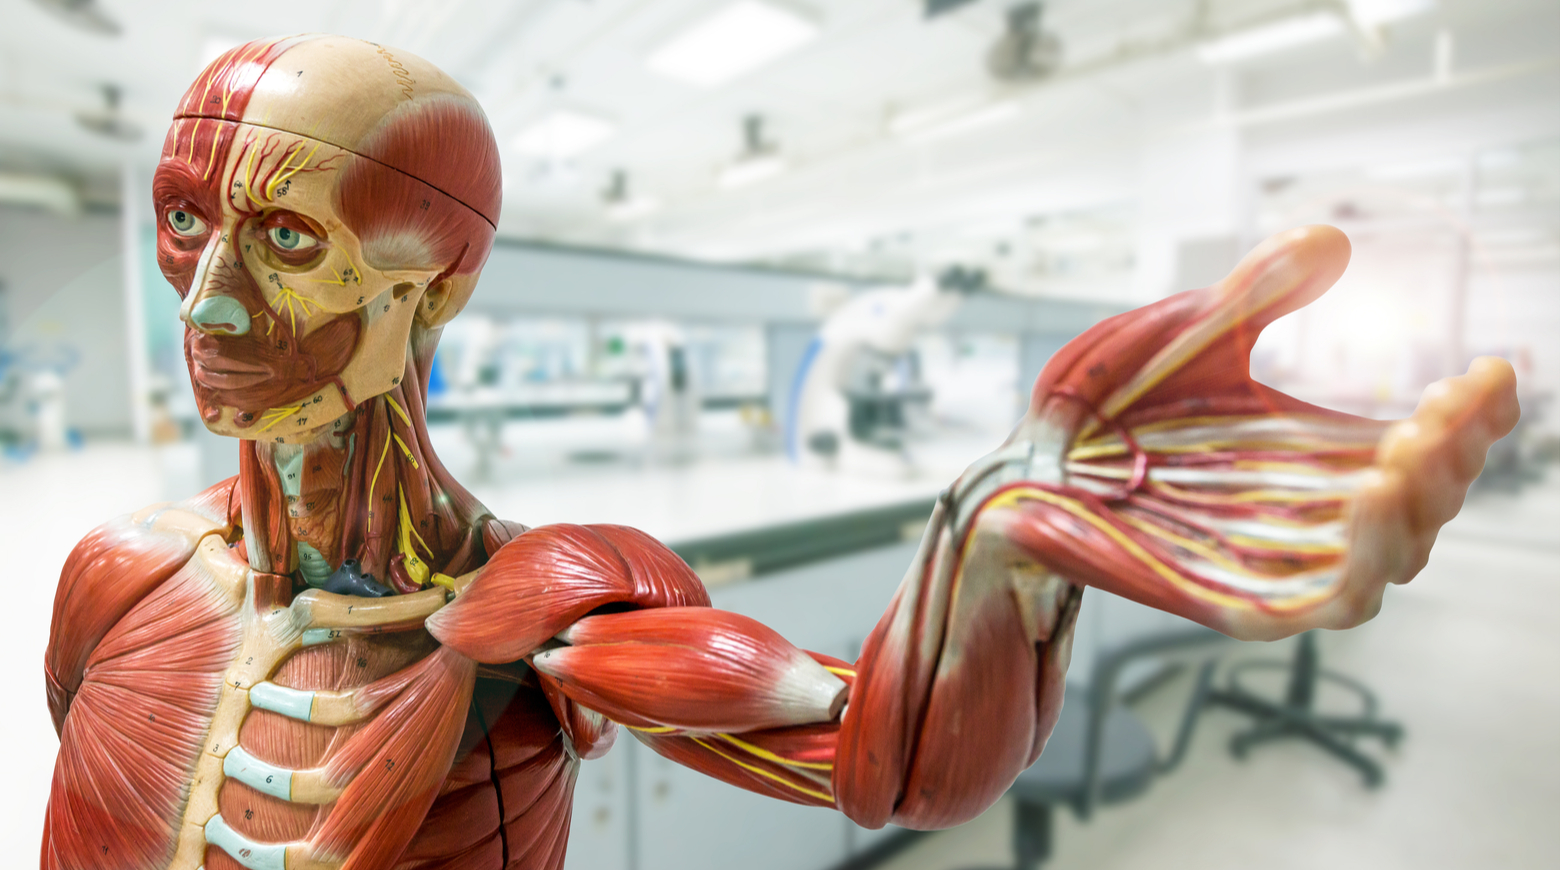 10 вопросов об анатомии, которые спрашивают дети: пересадка мозга в андроида, симбионты человека и суперзрение